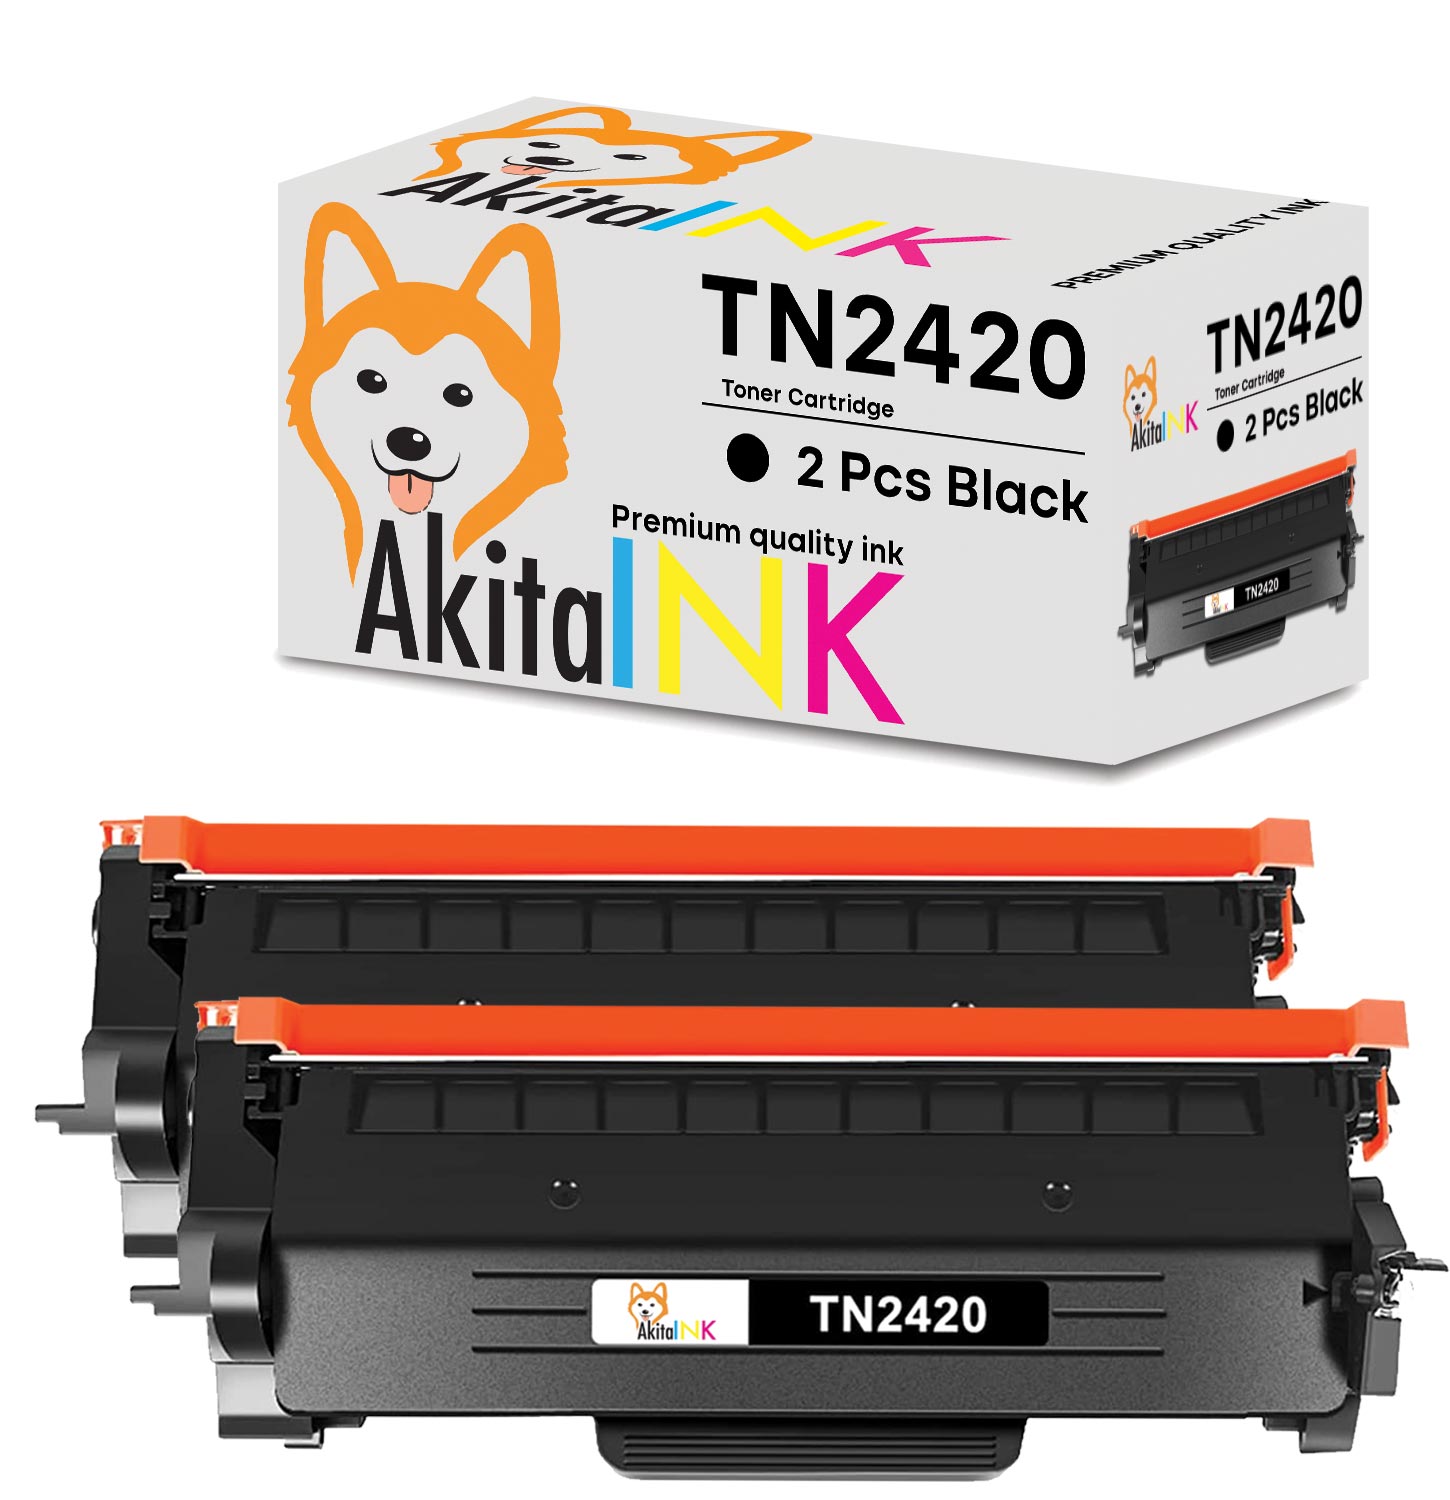 Toner TN2420 Brother compatibile 3000 stampe (2 Toner) - Nonsoloinformatica